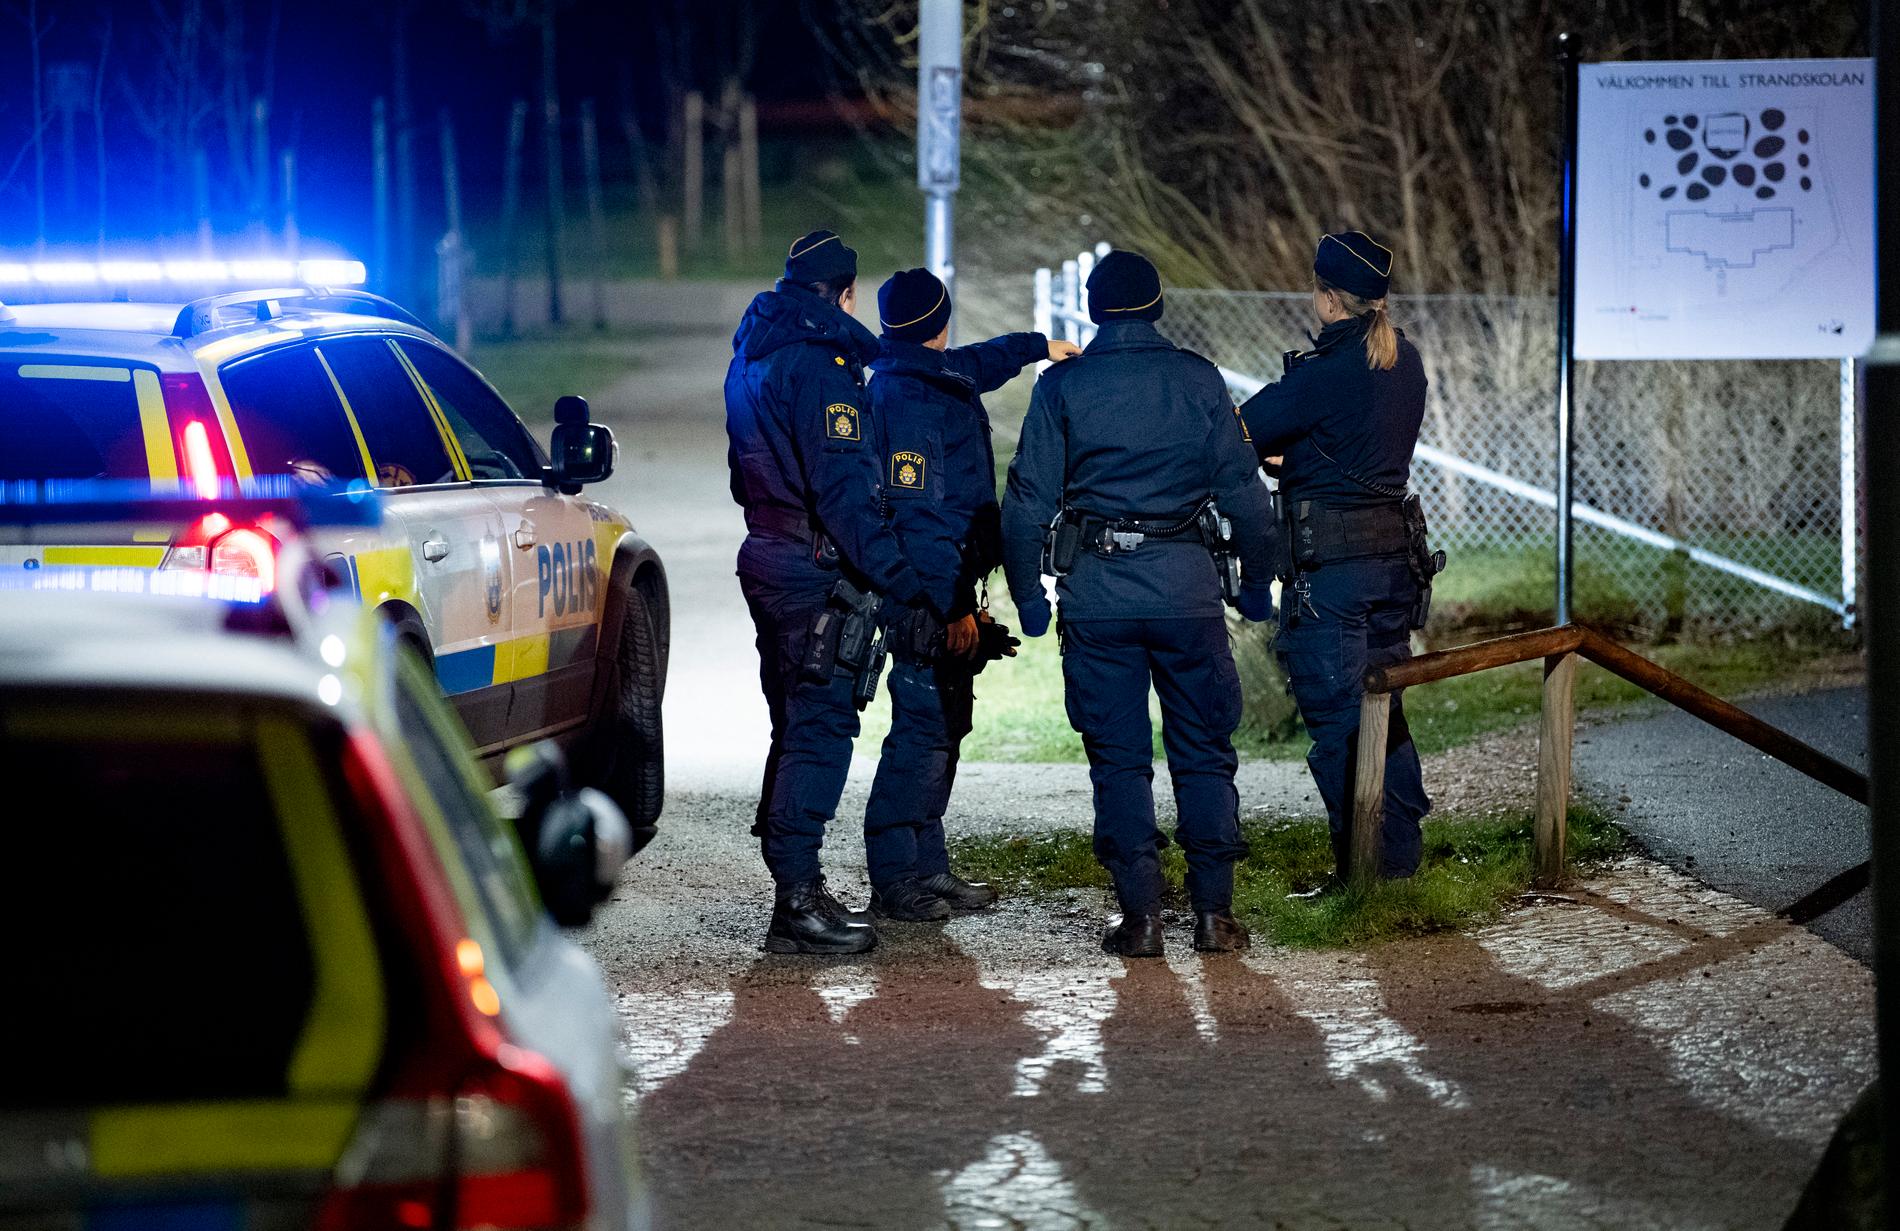 Polis och kriminaltekniker på plats vid Strandskolan i Lomma. En ung man fick föras med ambulans till sjukhus efter att ha blivit knivskuren utomhus.